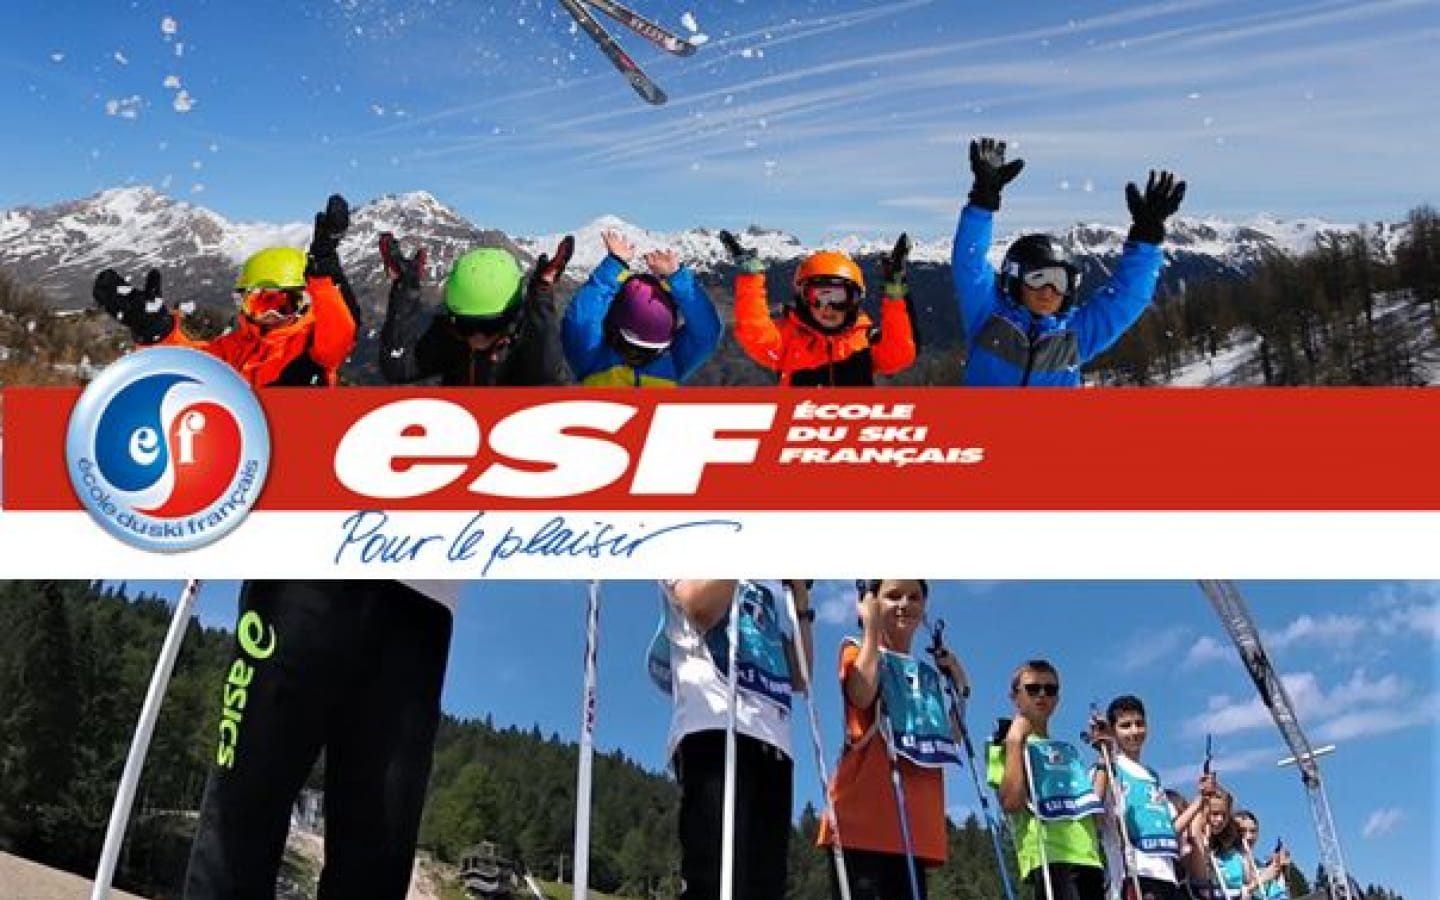 École de Ski Français des Rousses